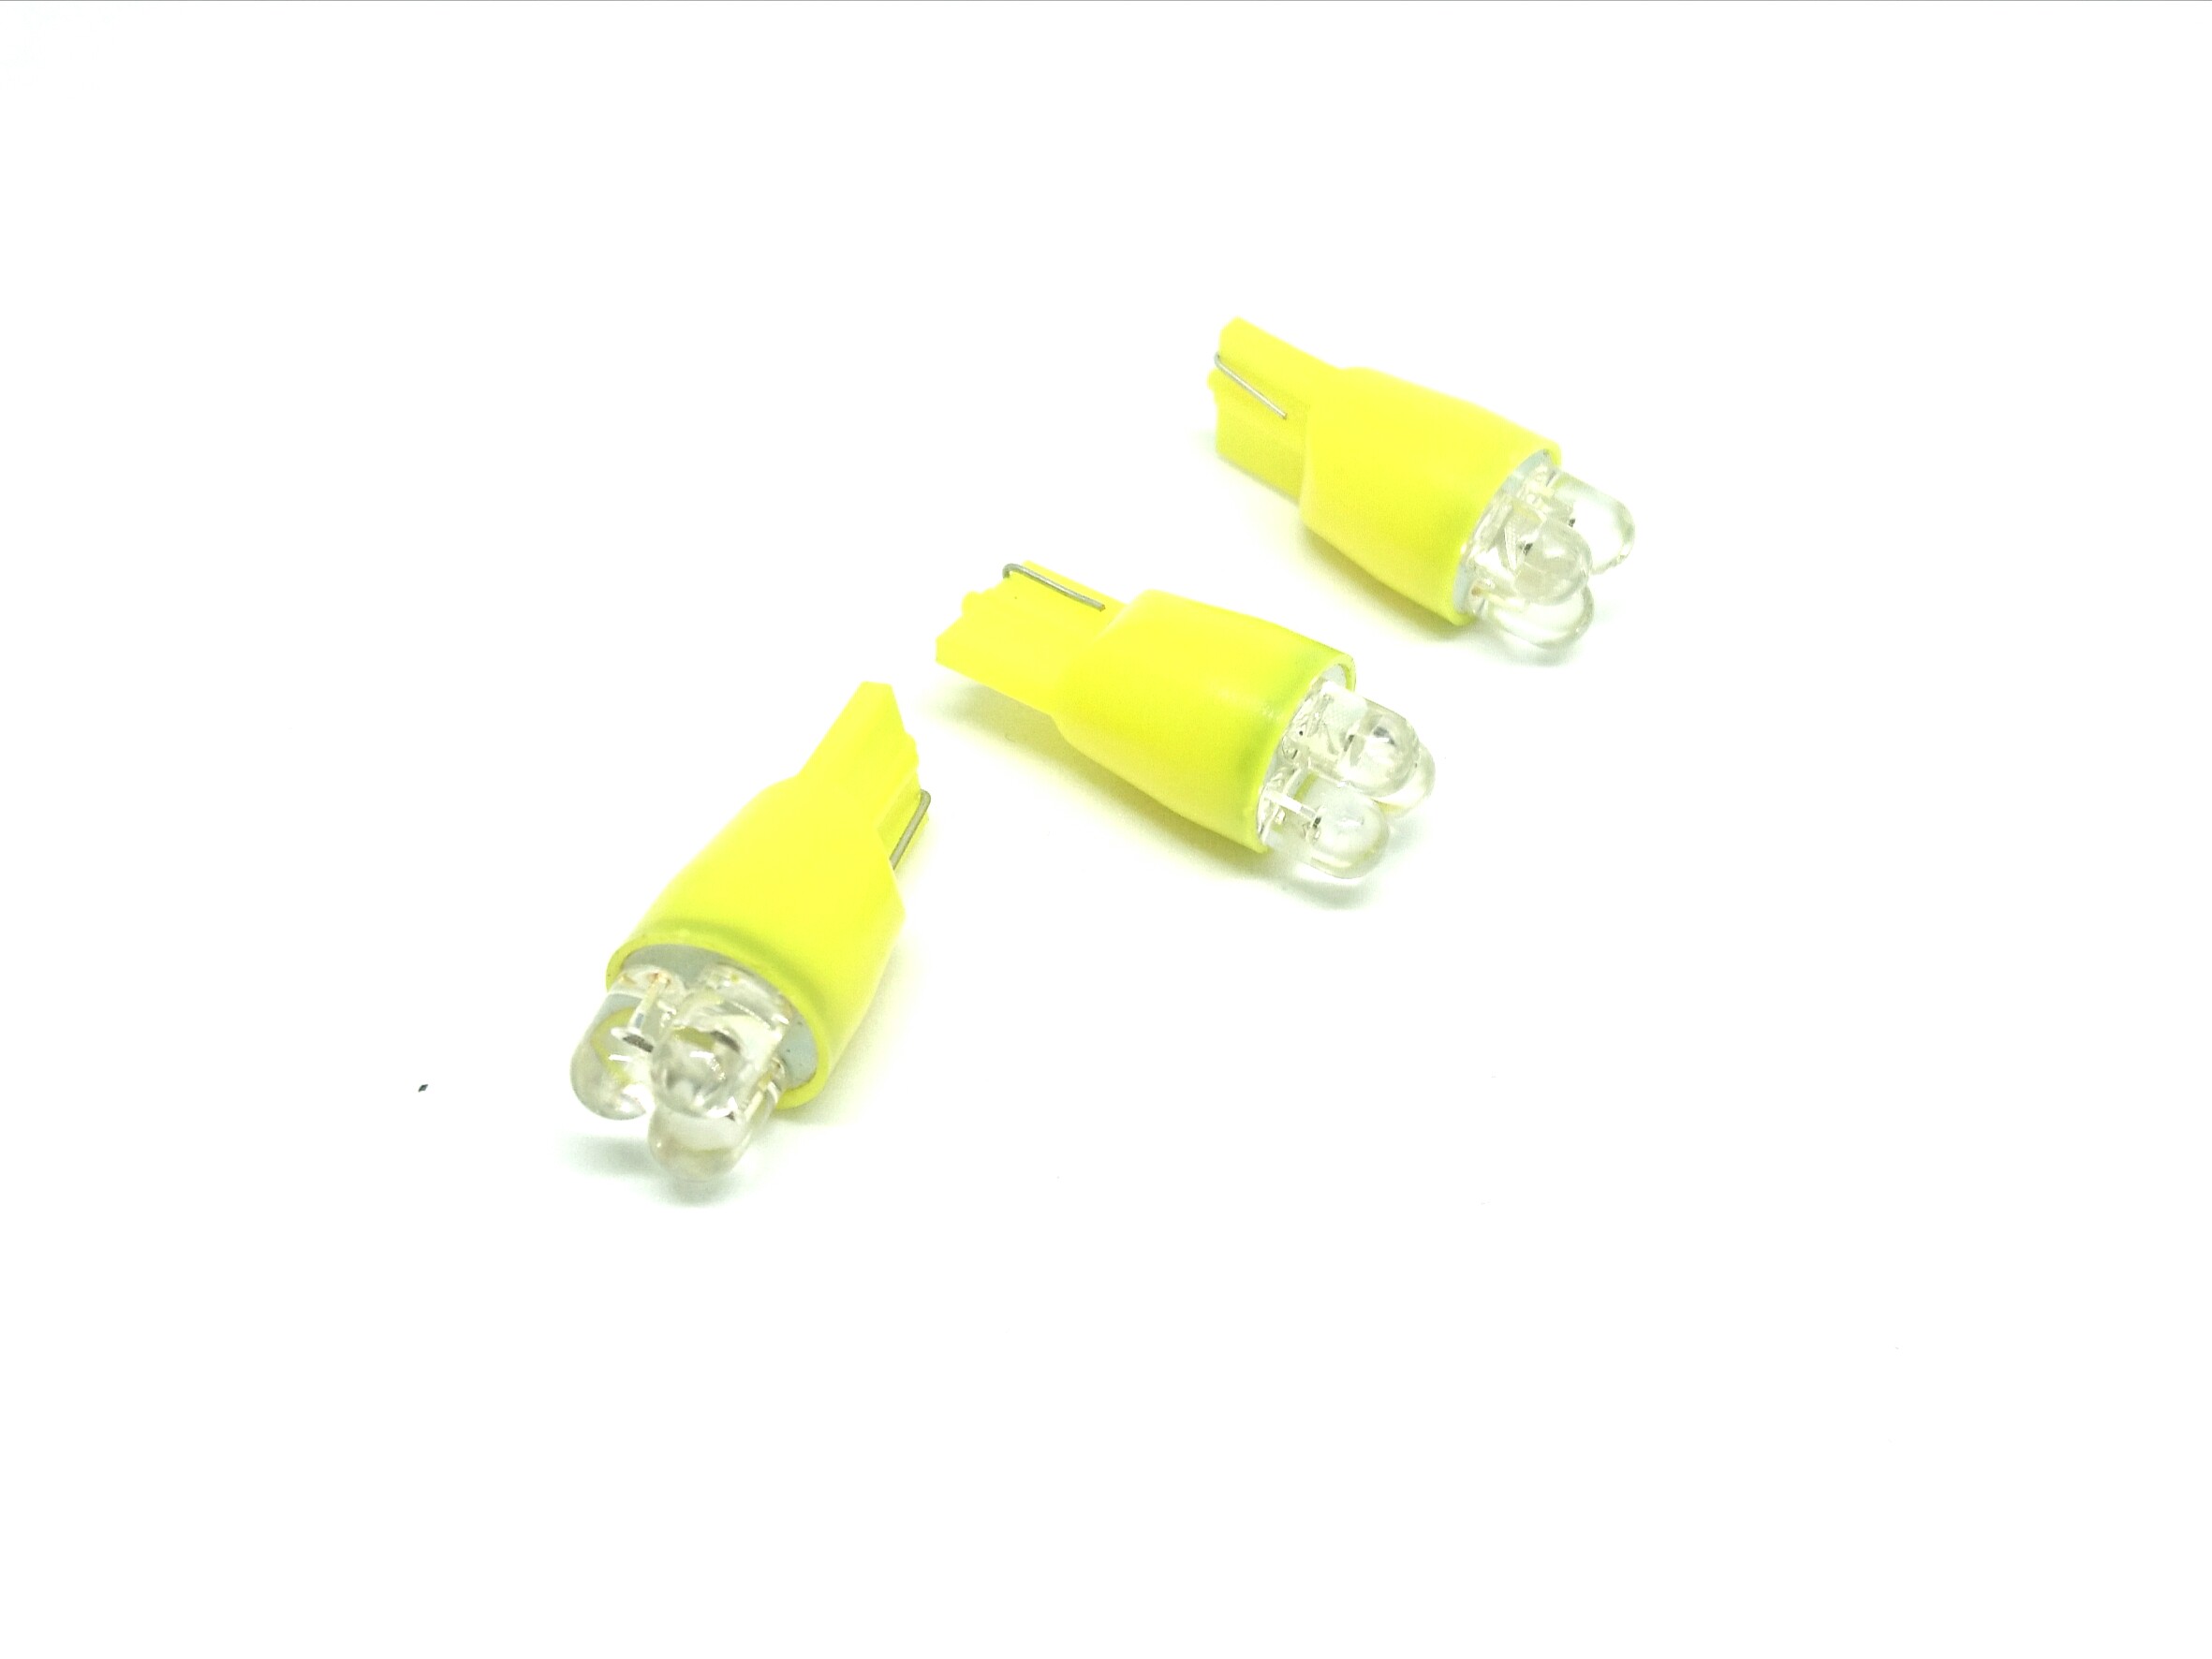 Светодиодная лампа, T11, с 3 светодиодами 2,1 ВТ, диаметр 11 мм, цвет желтый, 10 шт